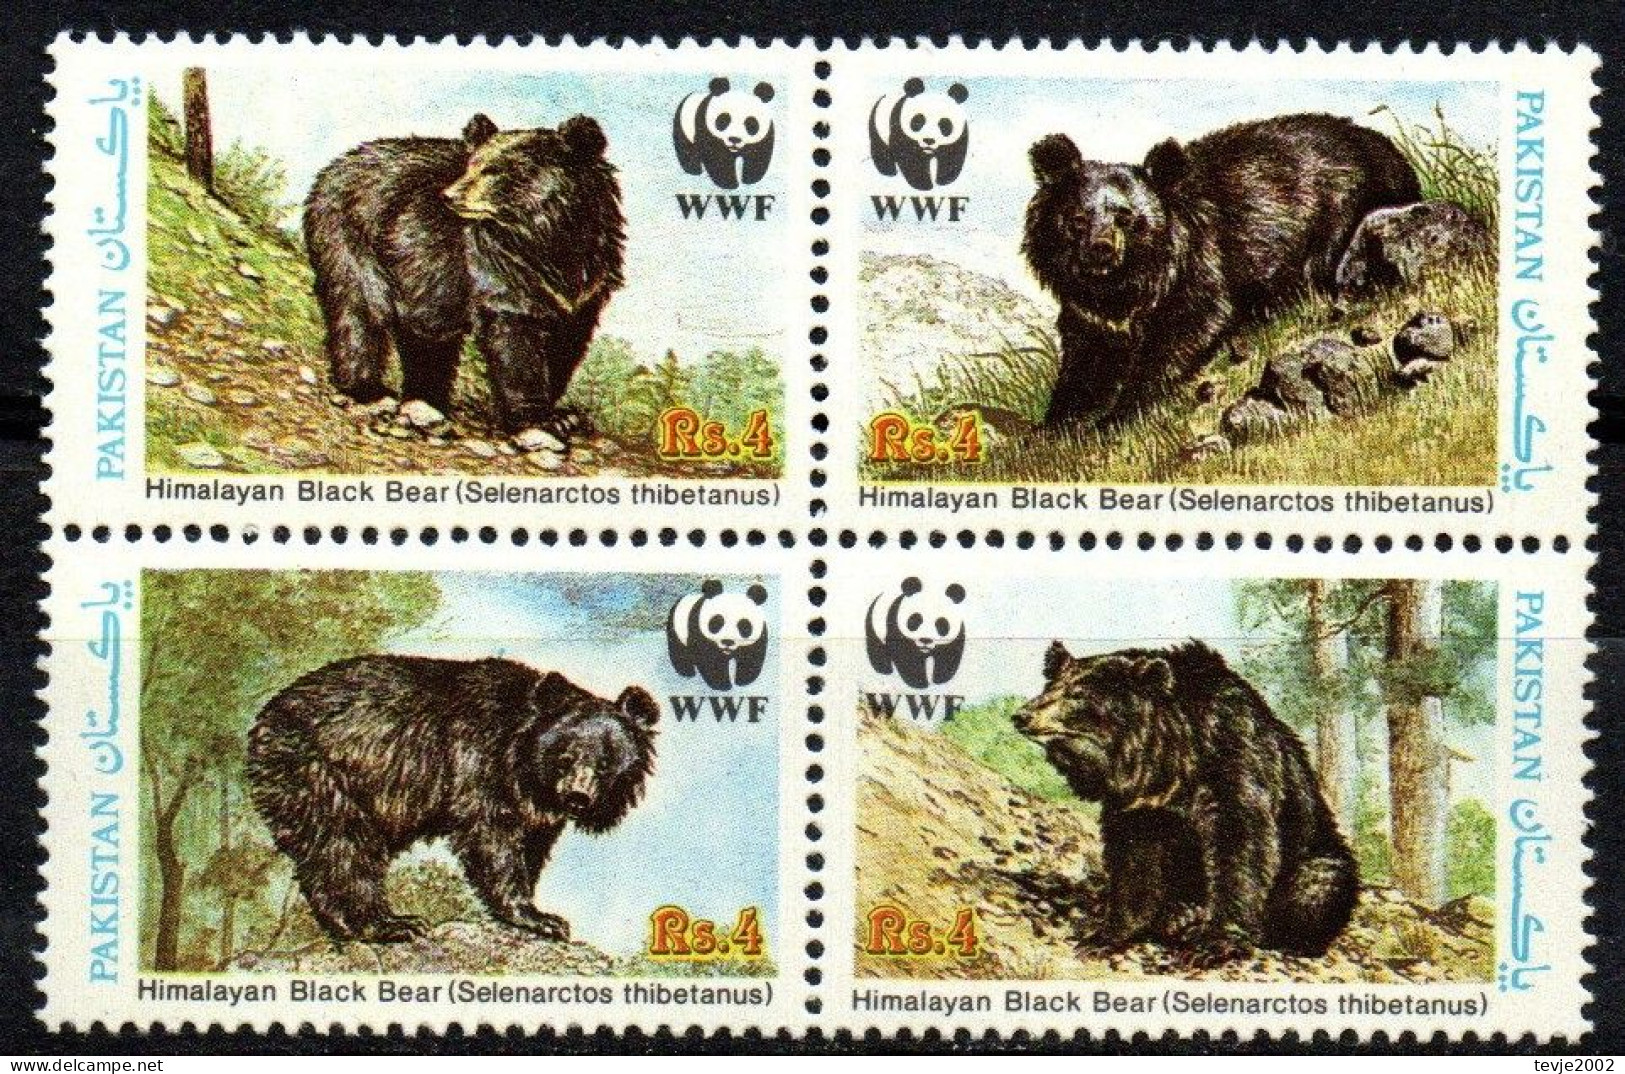 Pakistan 1989 - Mi.Nr. 759 - 762 - Postfrisch MNH - Tiere Animals Bären Bears WWF - Bears